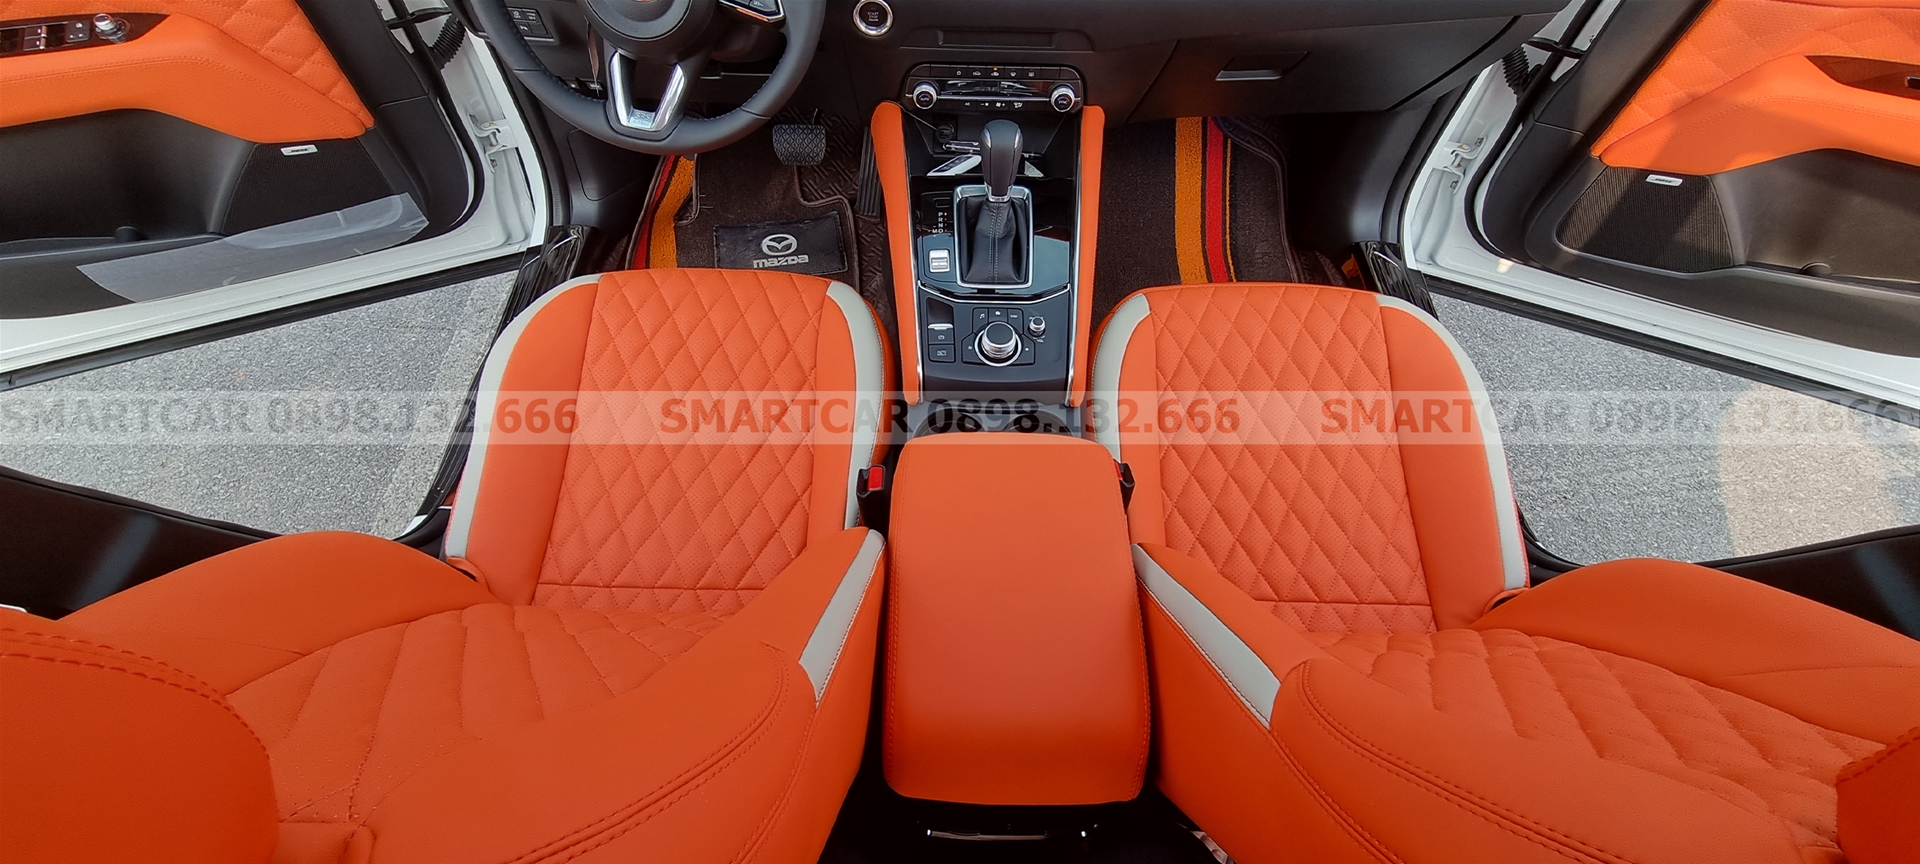 Bọc ghế da Mazda CX5 màu cam Hermes - Hình 1